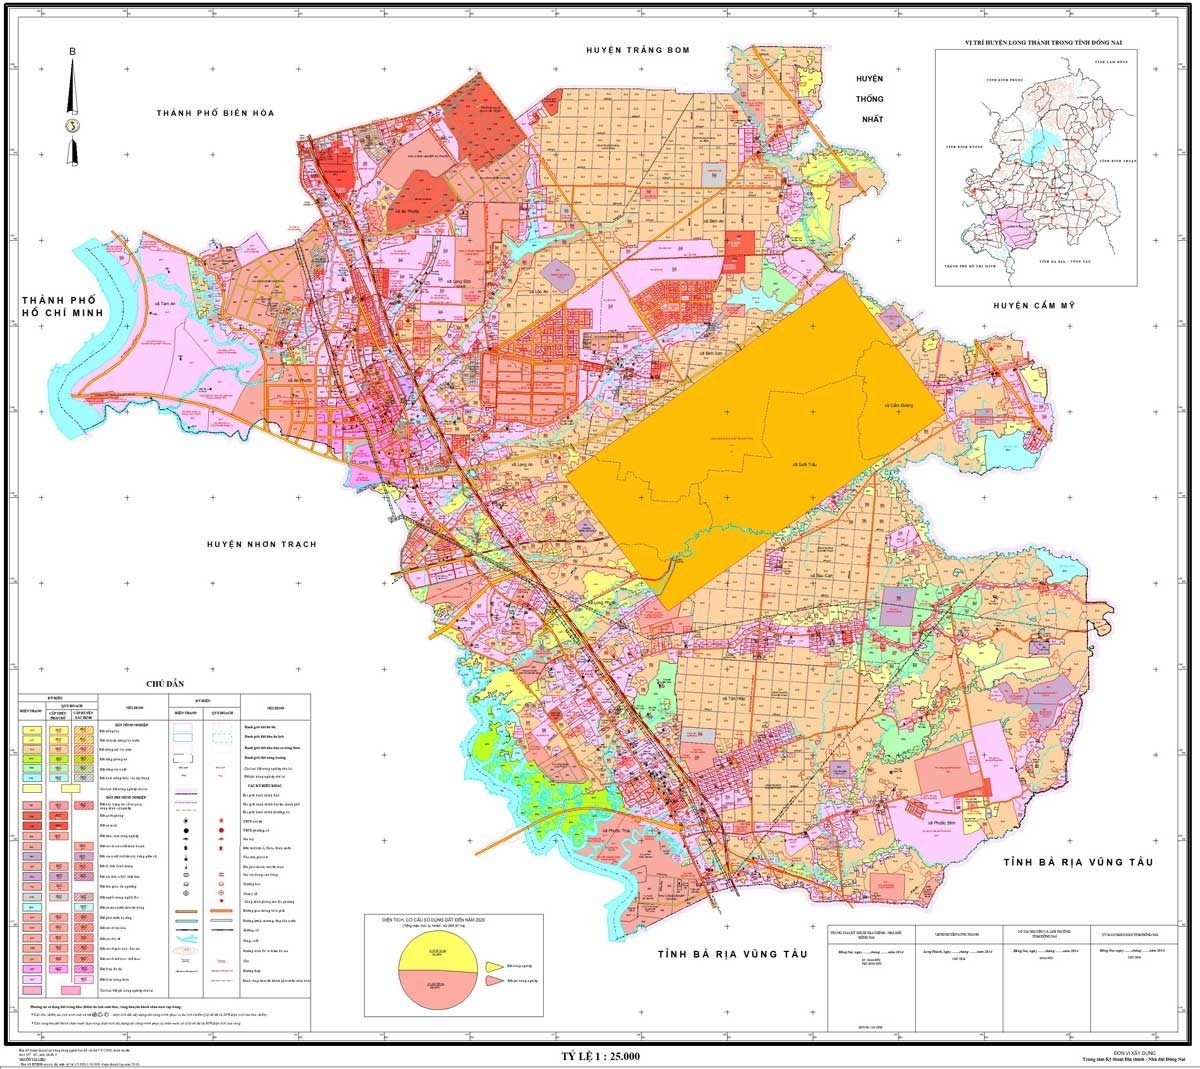 
Bản đồ quy hoạch huyện Long Thành được sử dụng đến năm 2030
